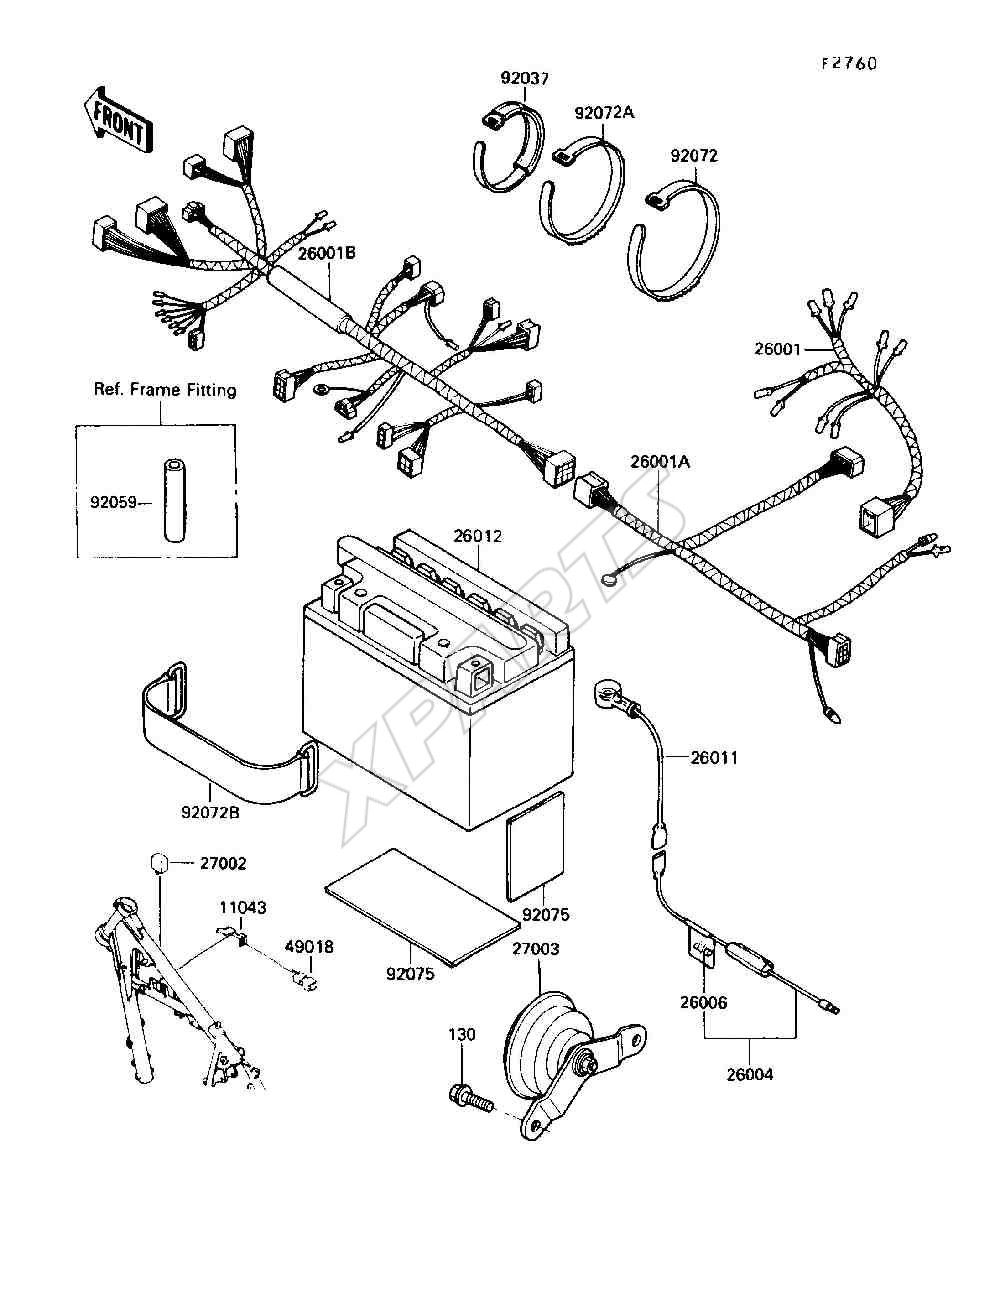 Bild für Kategorie Electrical Equipment